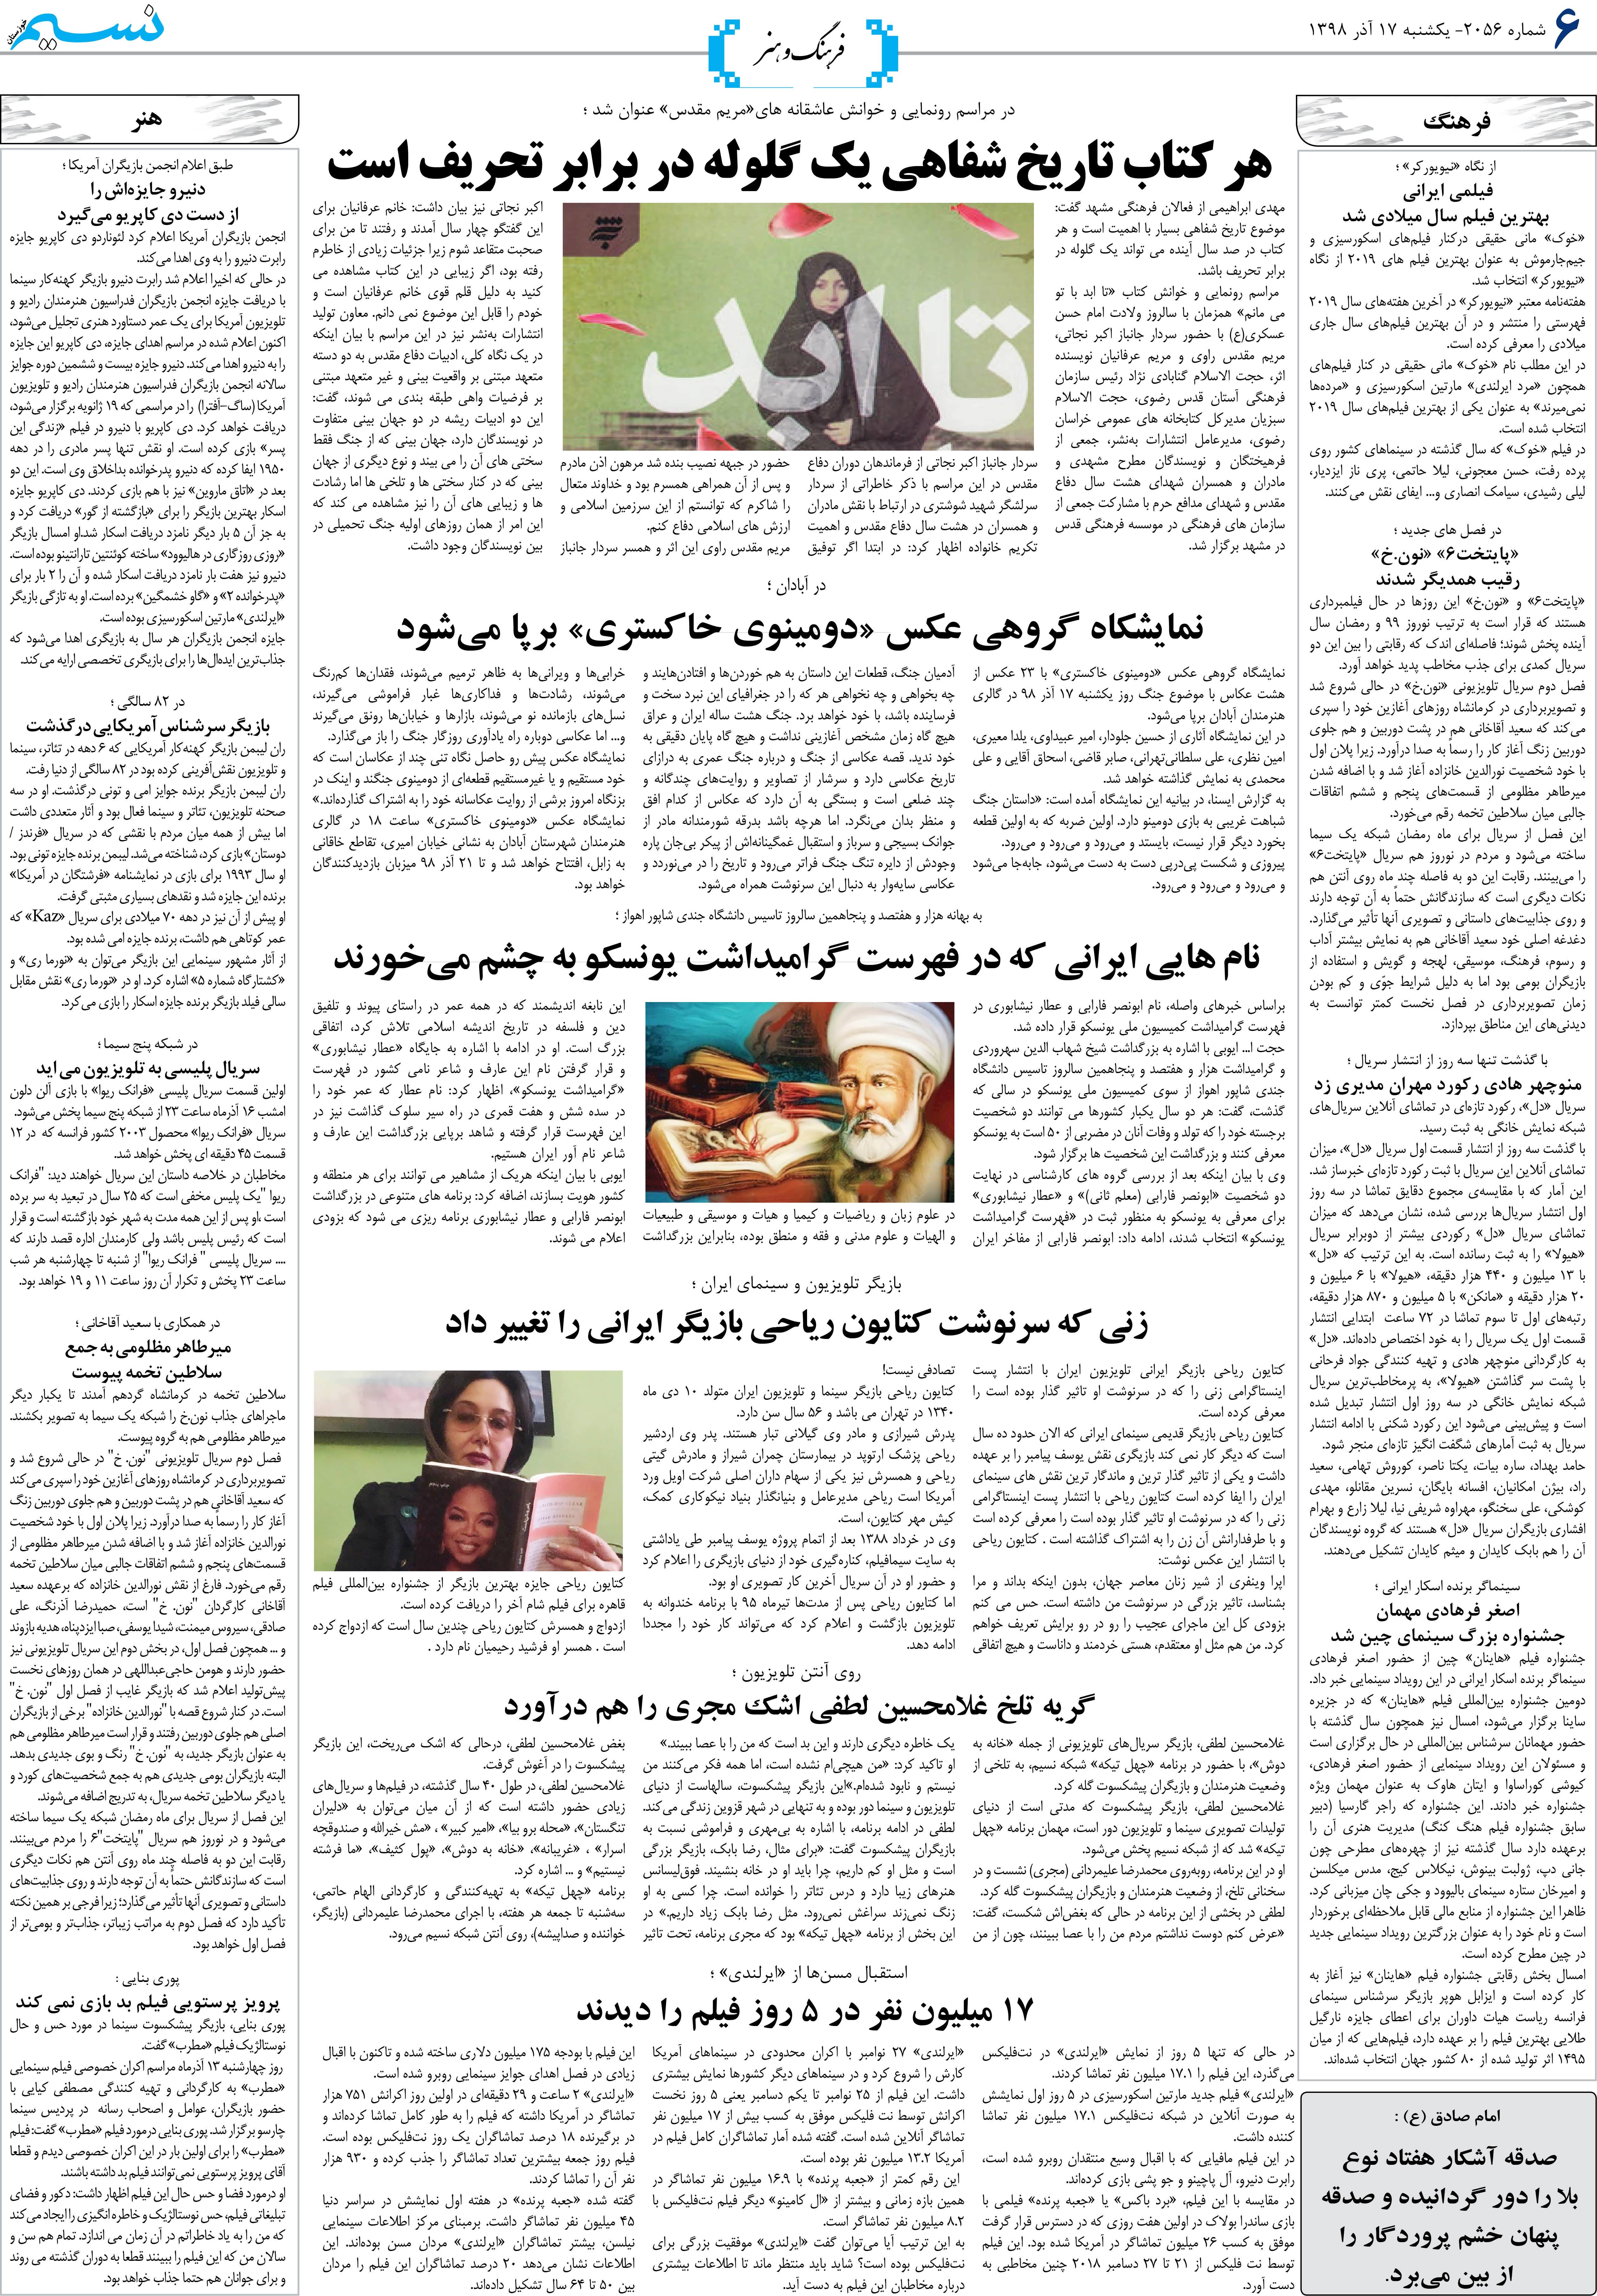 صفحه فرهنگ و هنر روزنامه نسیم شماره 2056